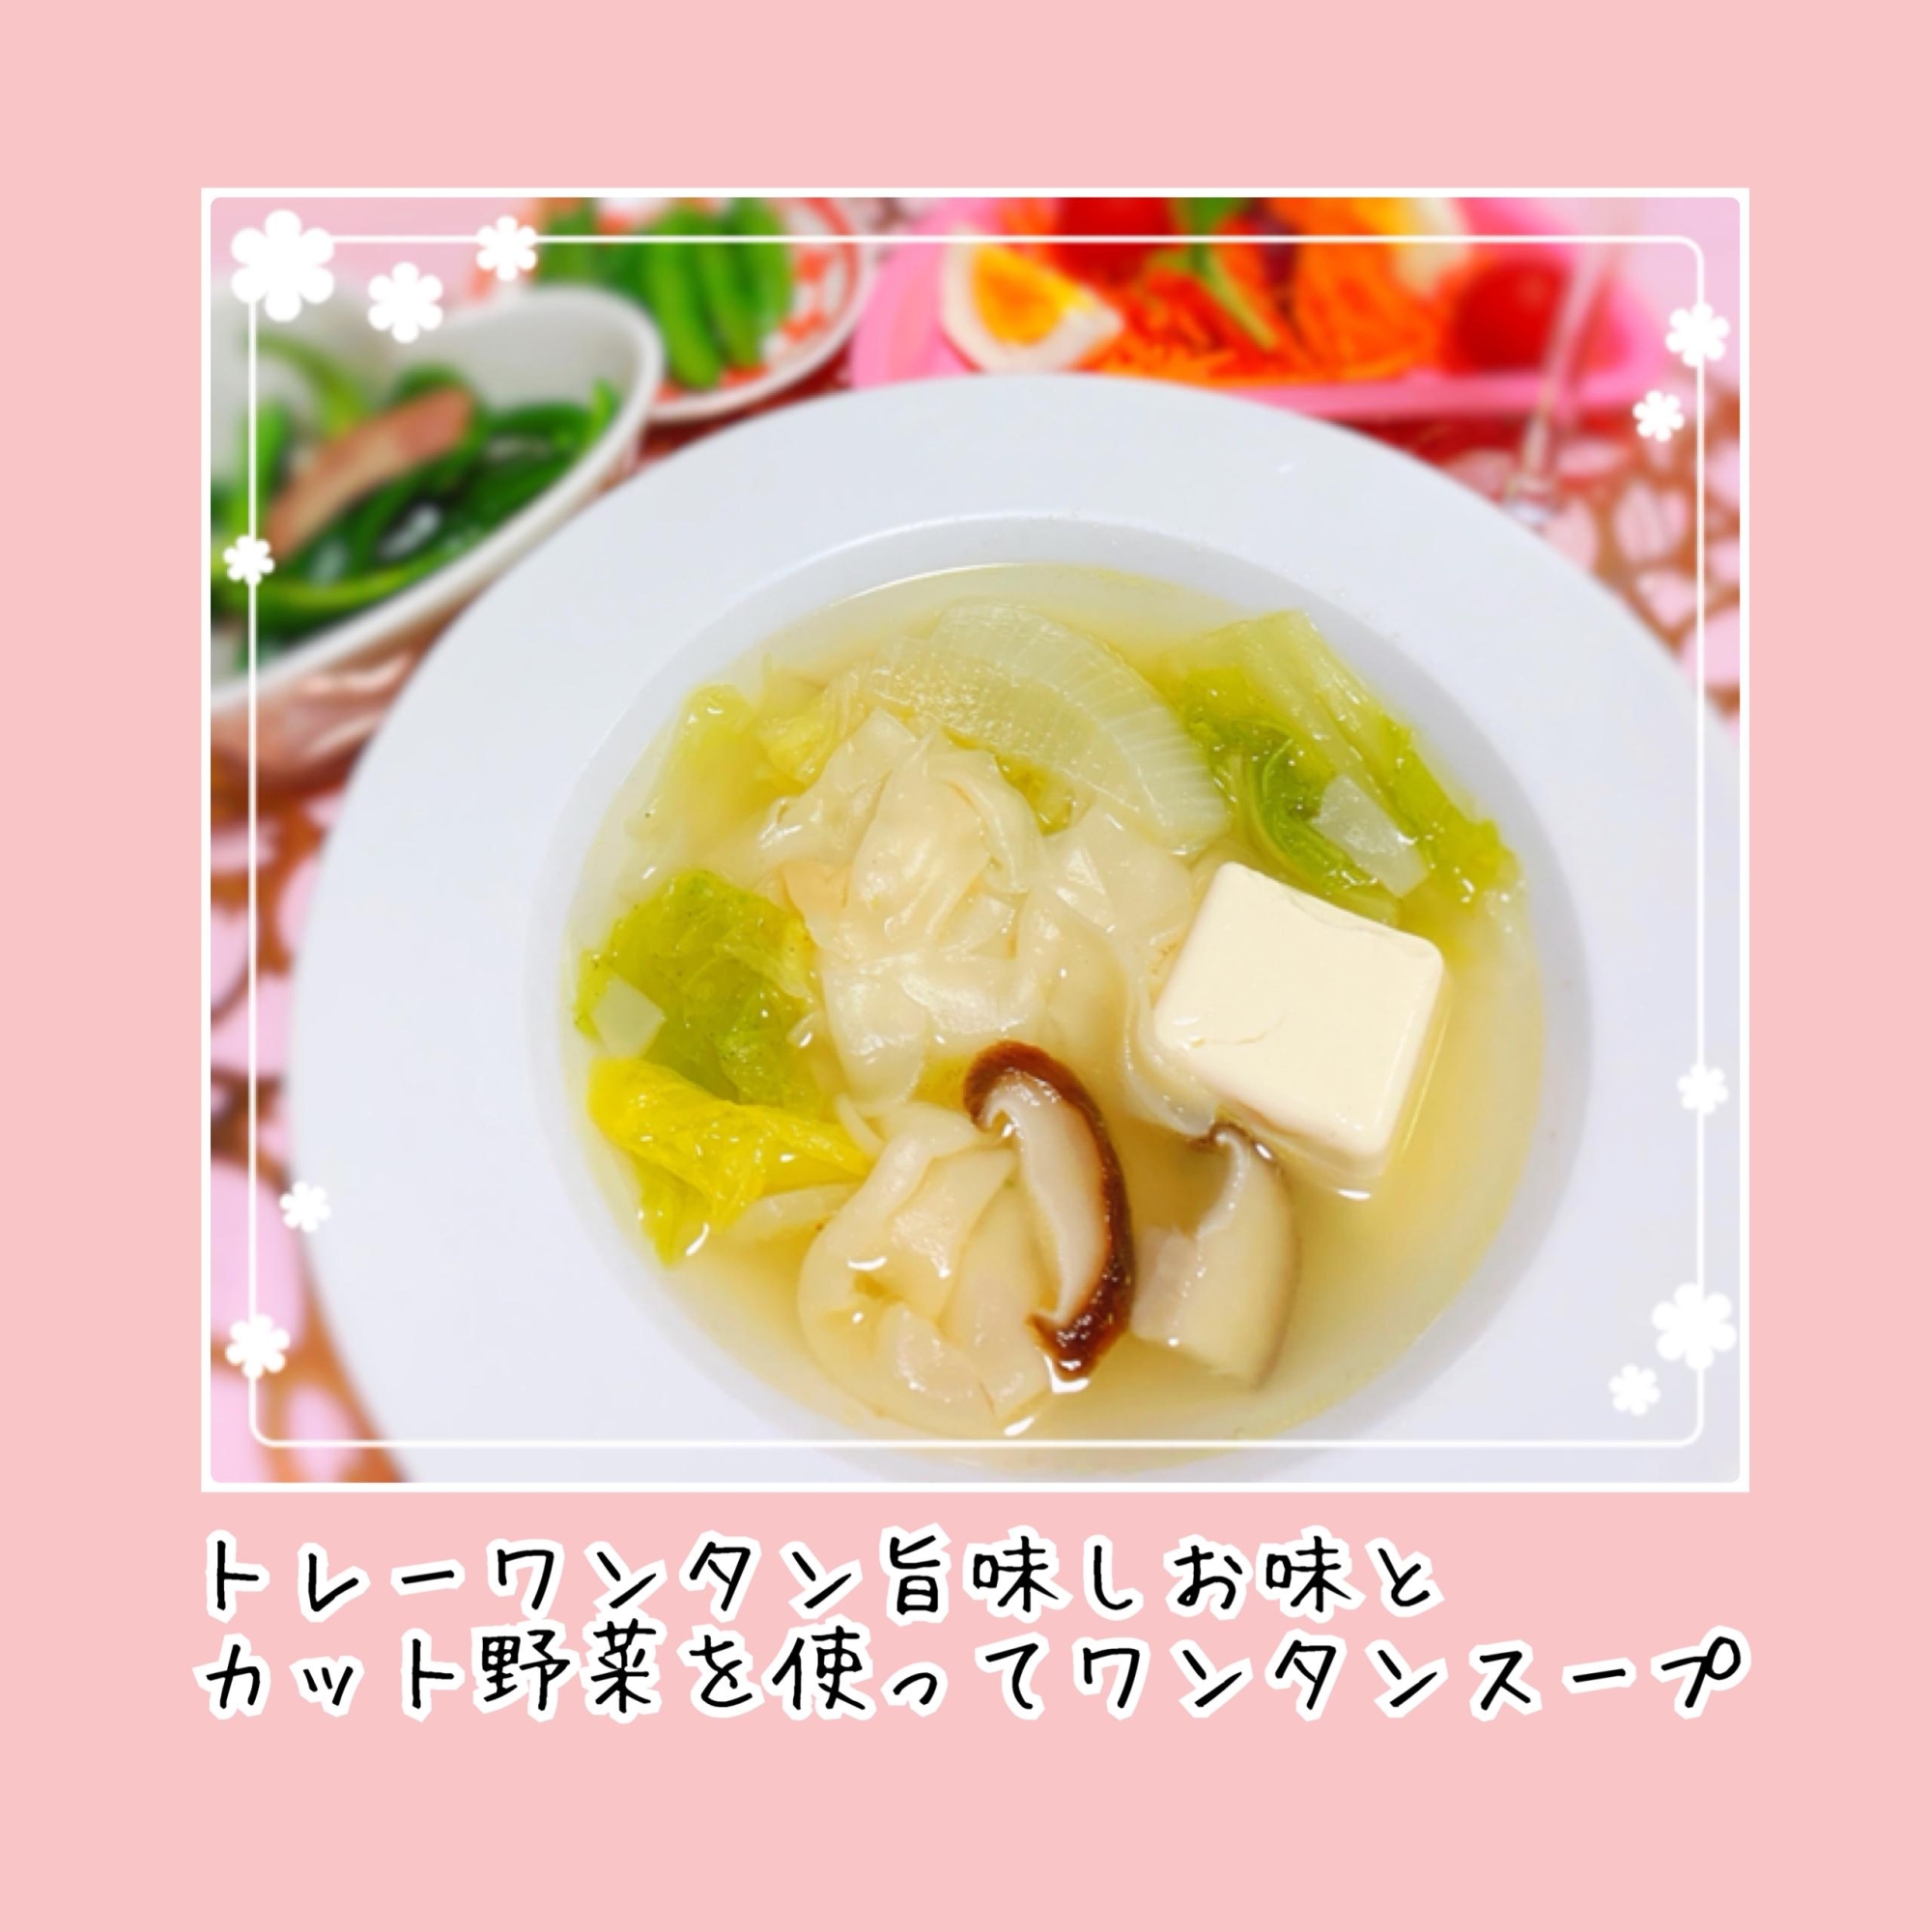 トレーワンタン旨味しお味と野菜で簡単ワンタンスープ